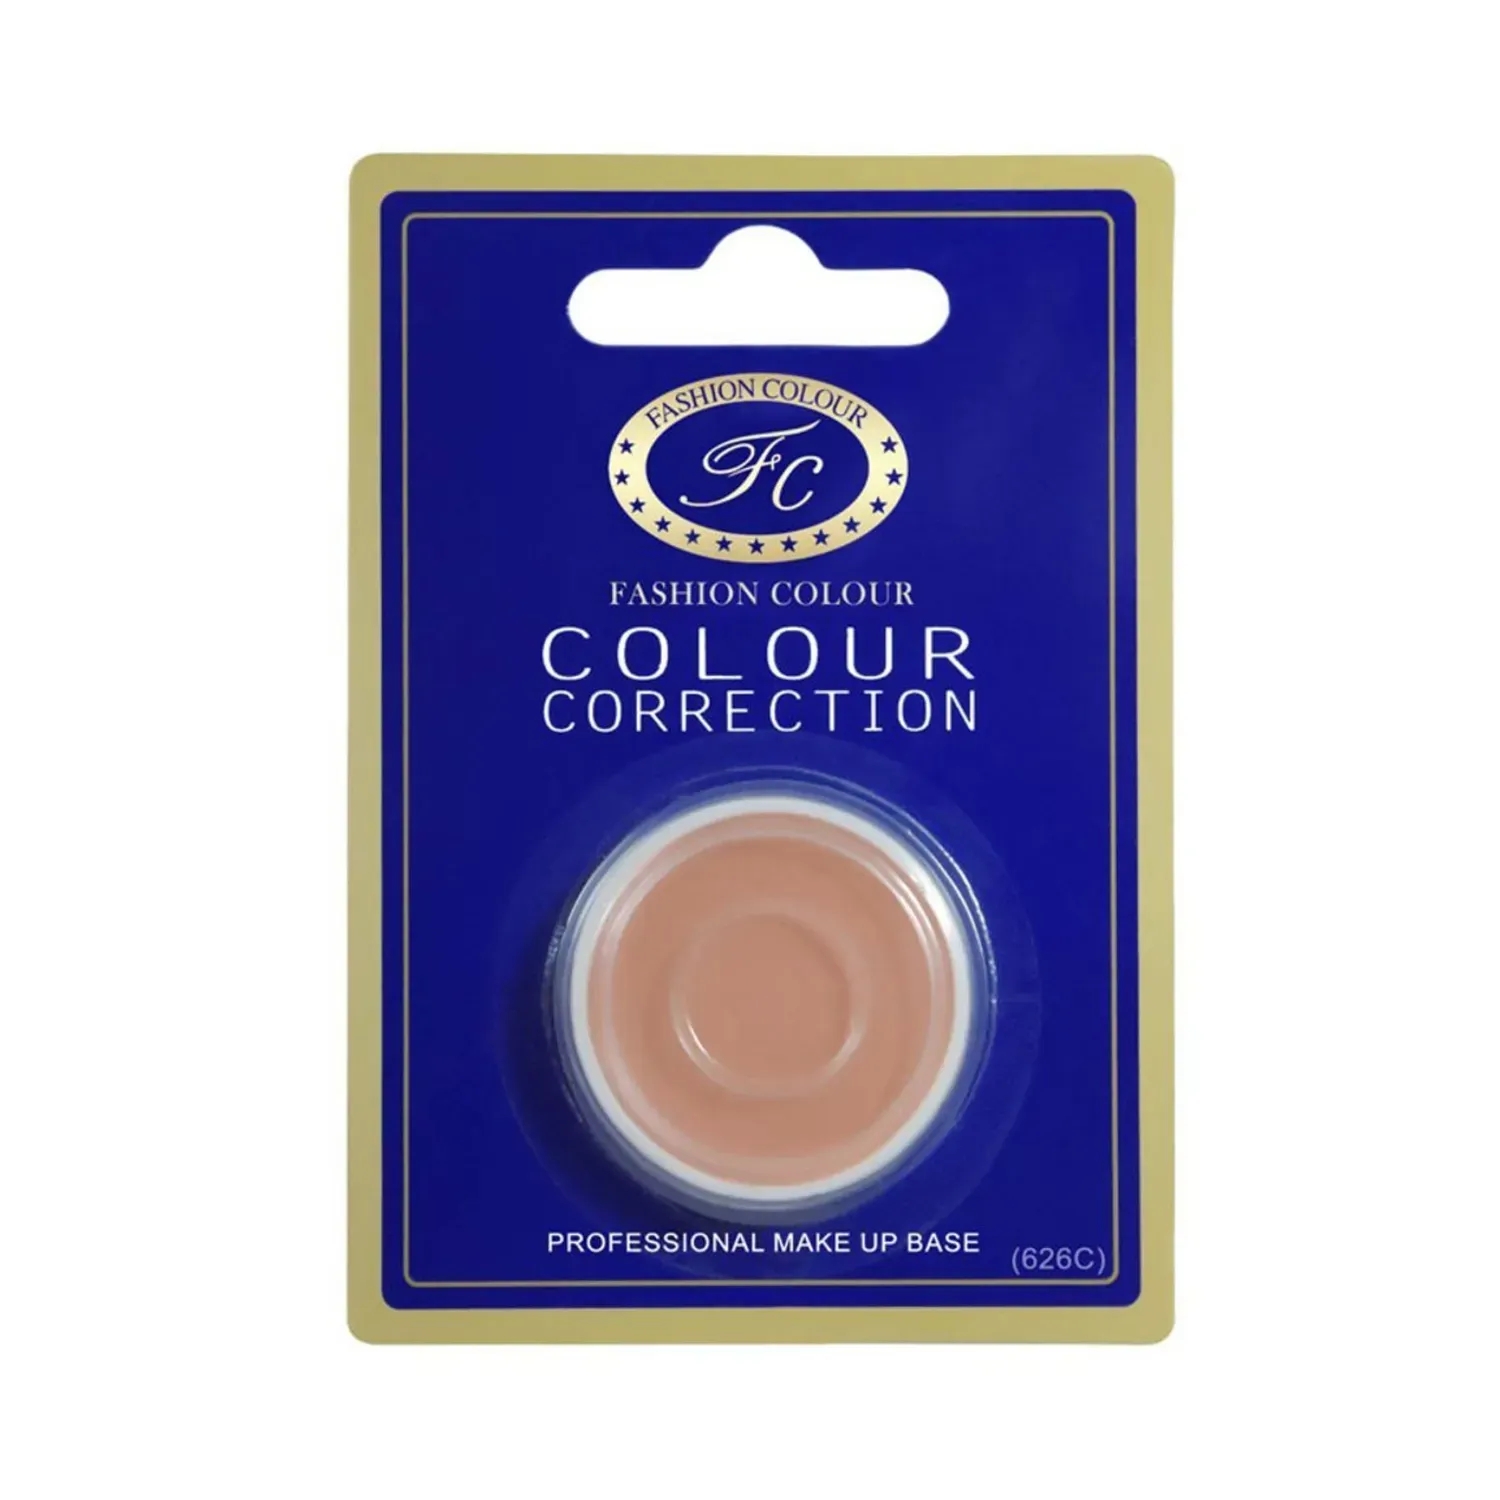 Fashion Colour | Fashion Colour Single Packing Colour Correction Makeup Base Concealer - 626C (3.5g)